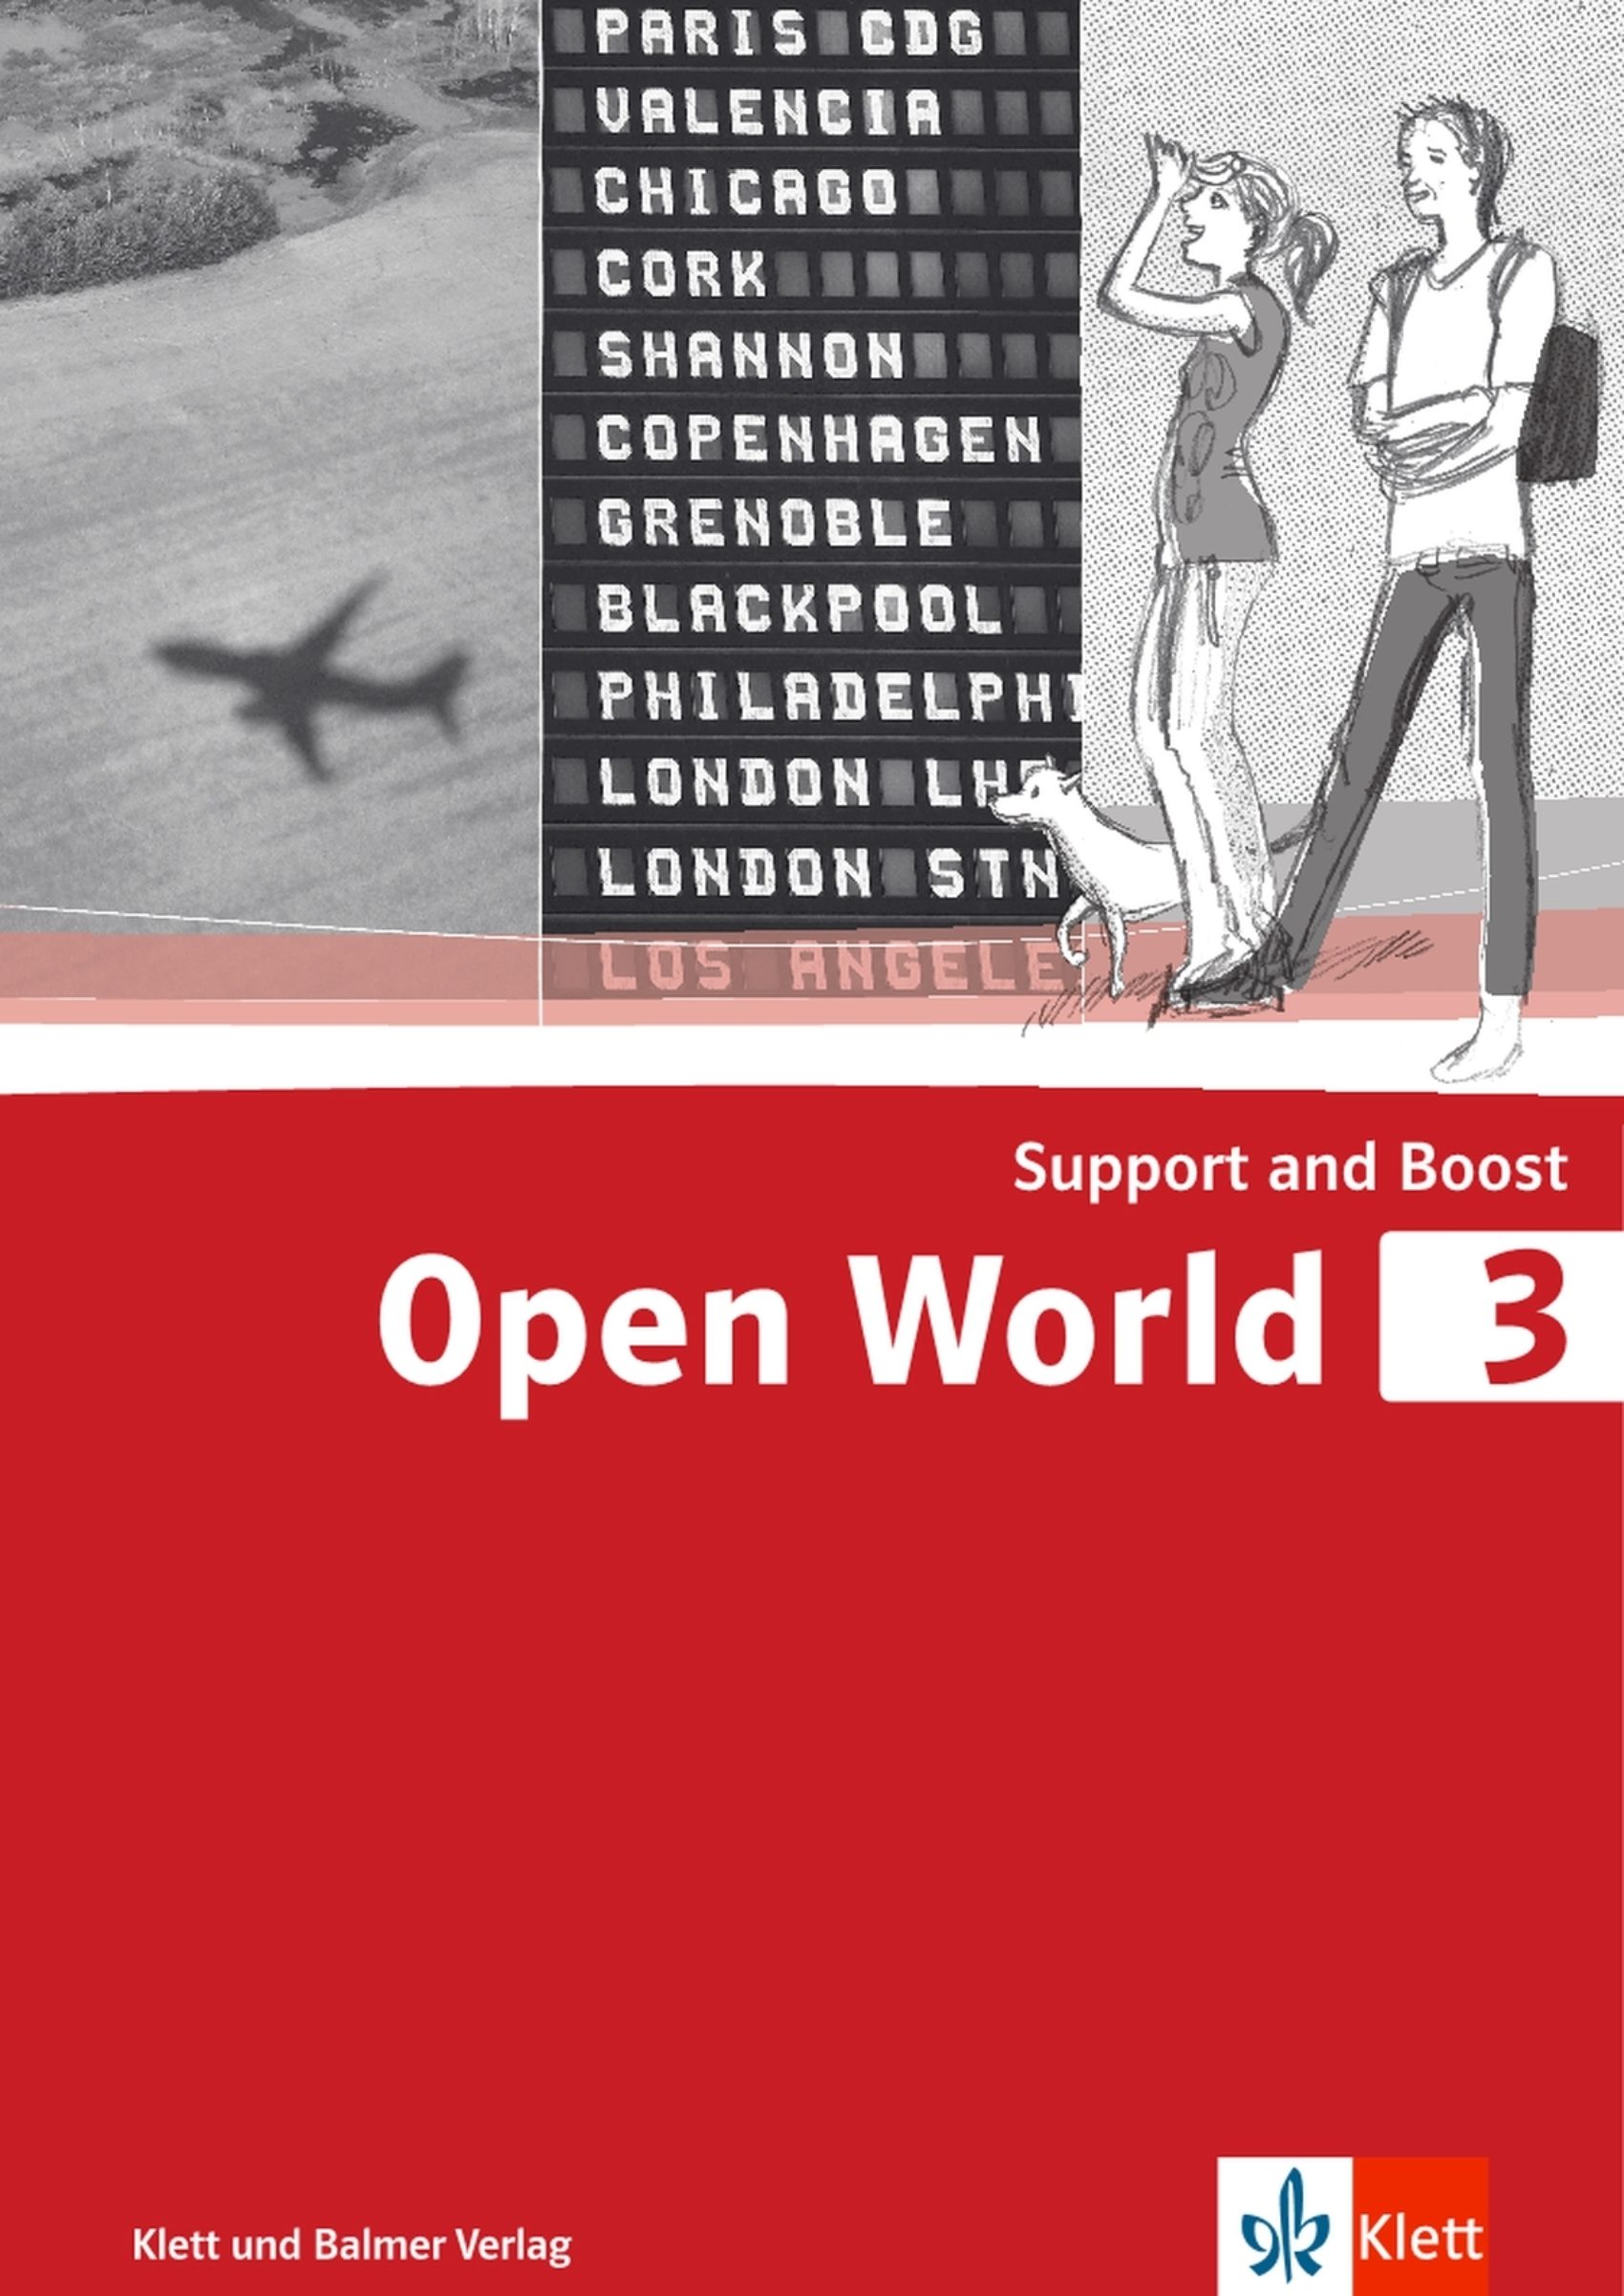 Support and boost open world 3 978 3 264 84265 4 klett und balmer